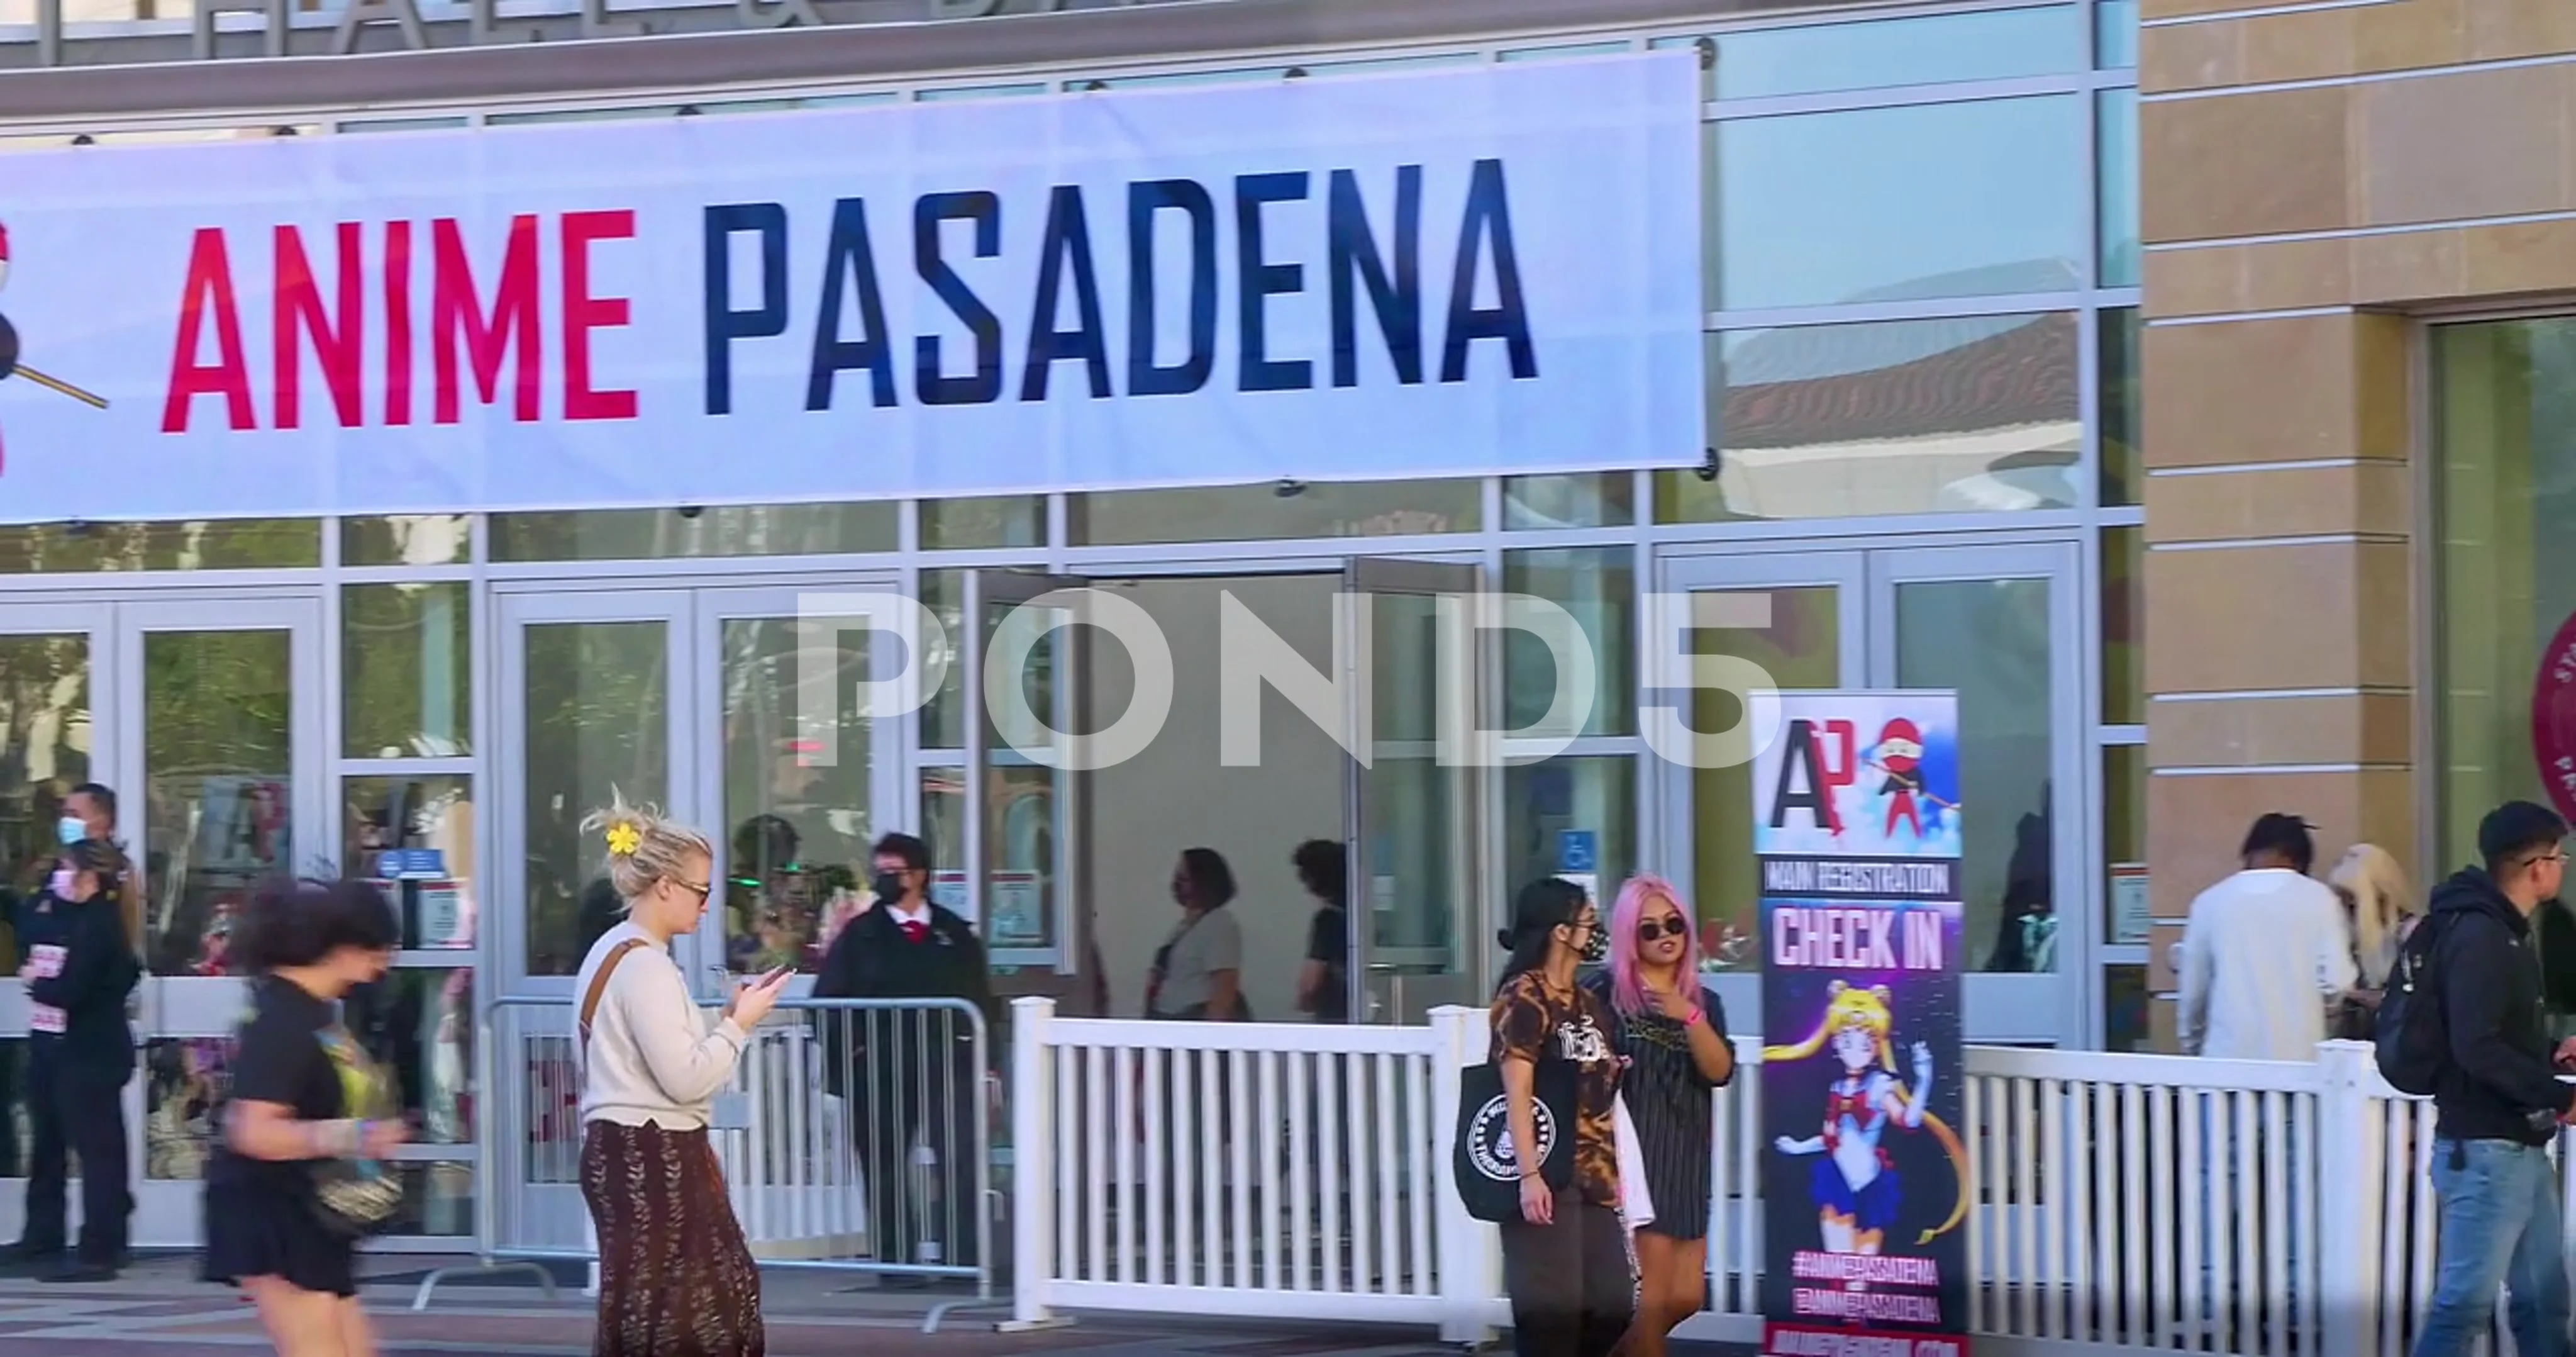 Anime Pasadena 2021 afterparty announced — MP3s & NPCs